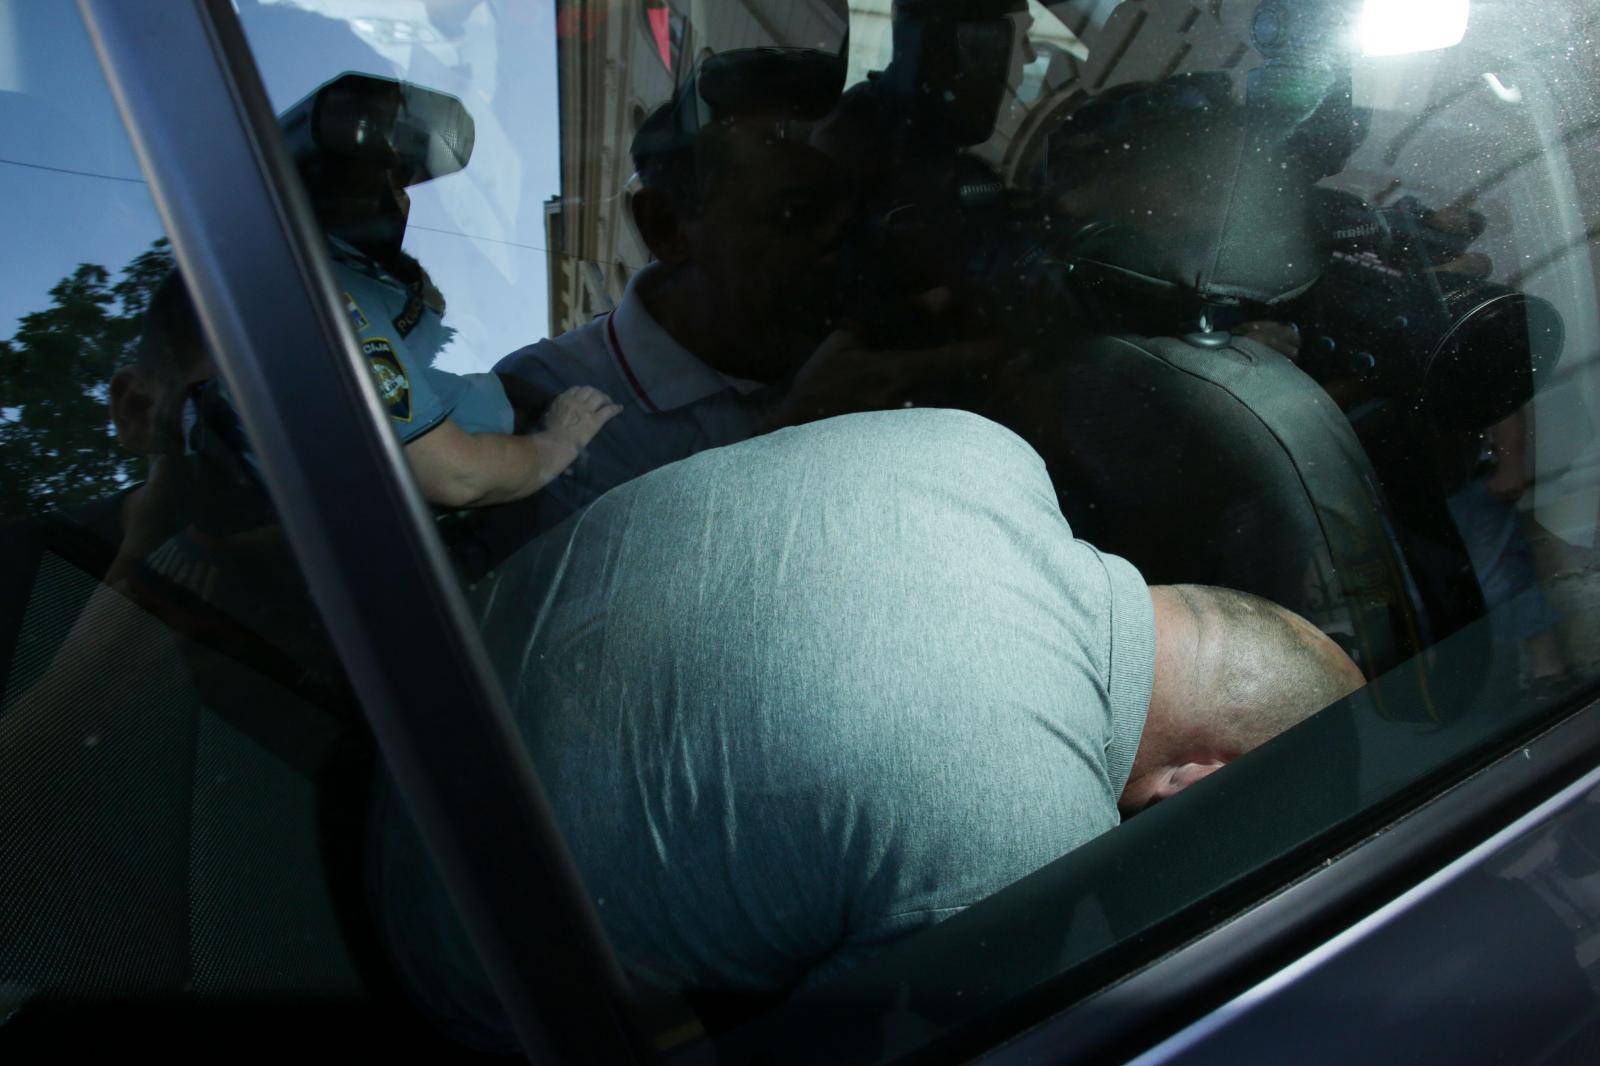 Diljem Hrvatske uhitili su 16 ljudi, dovode ih na ispitivanje